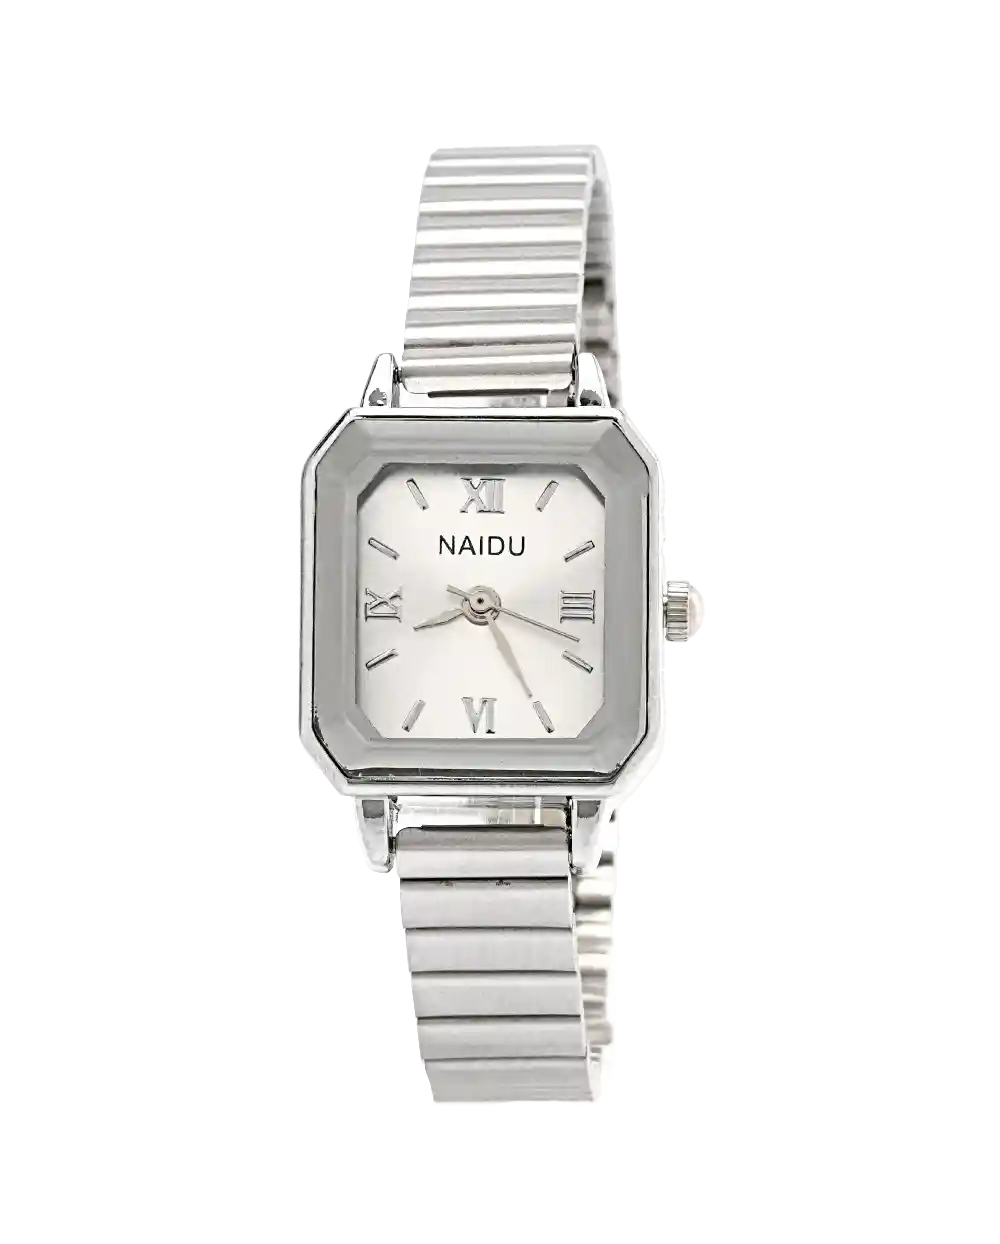 خرید ساعت مچی زنانه نایدو NAIDU مدل 1867 رنگ نقره ای و شیشه ی الماسی قیمت 449 هزارتومان به همراه ارسال رایگان به سراسر ایران و جعبه ی کادویی